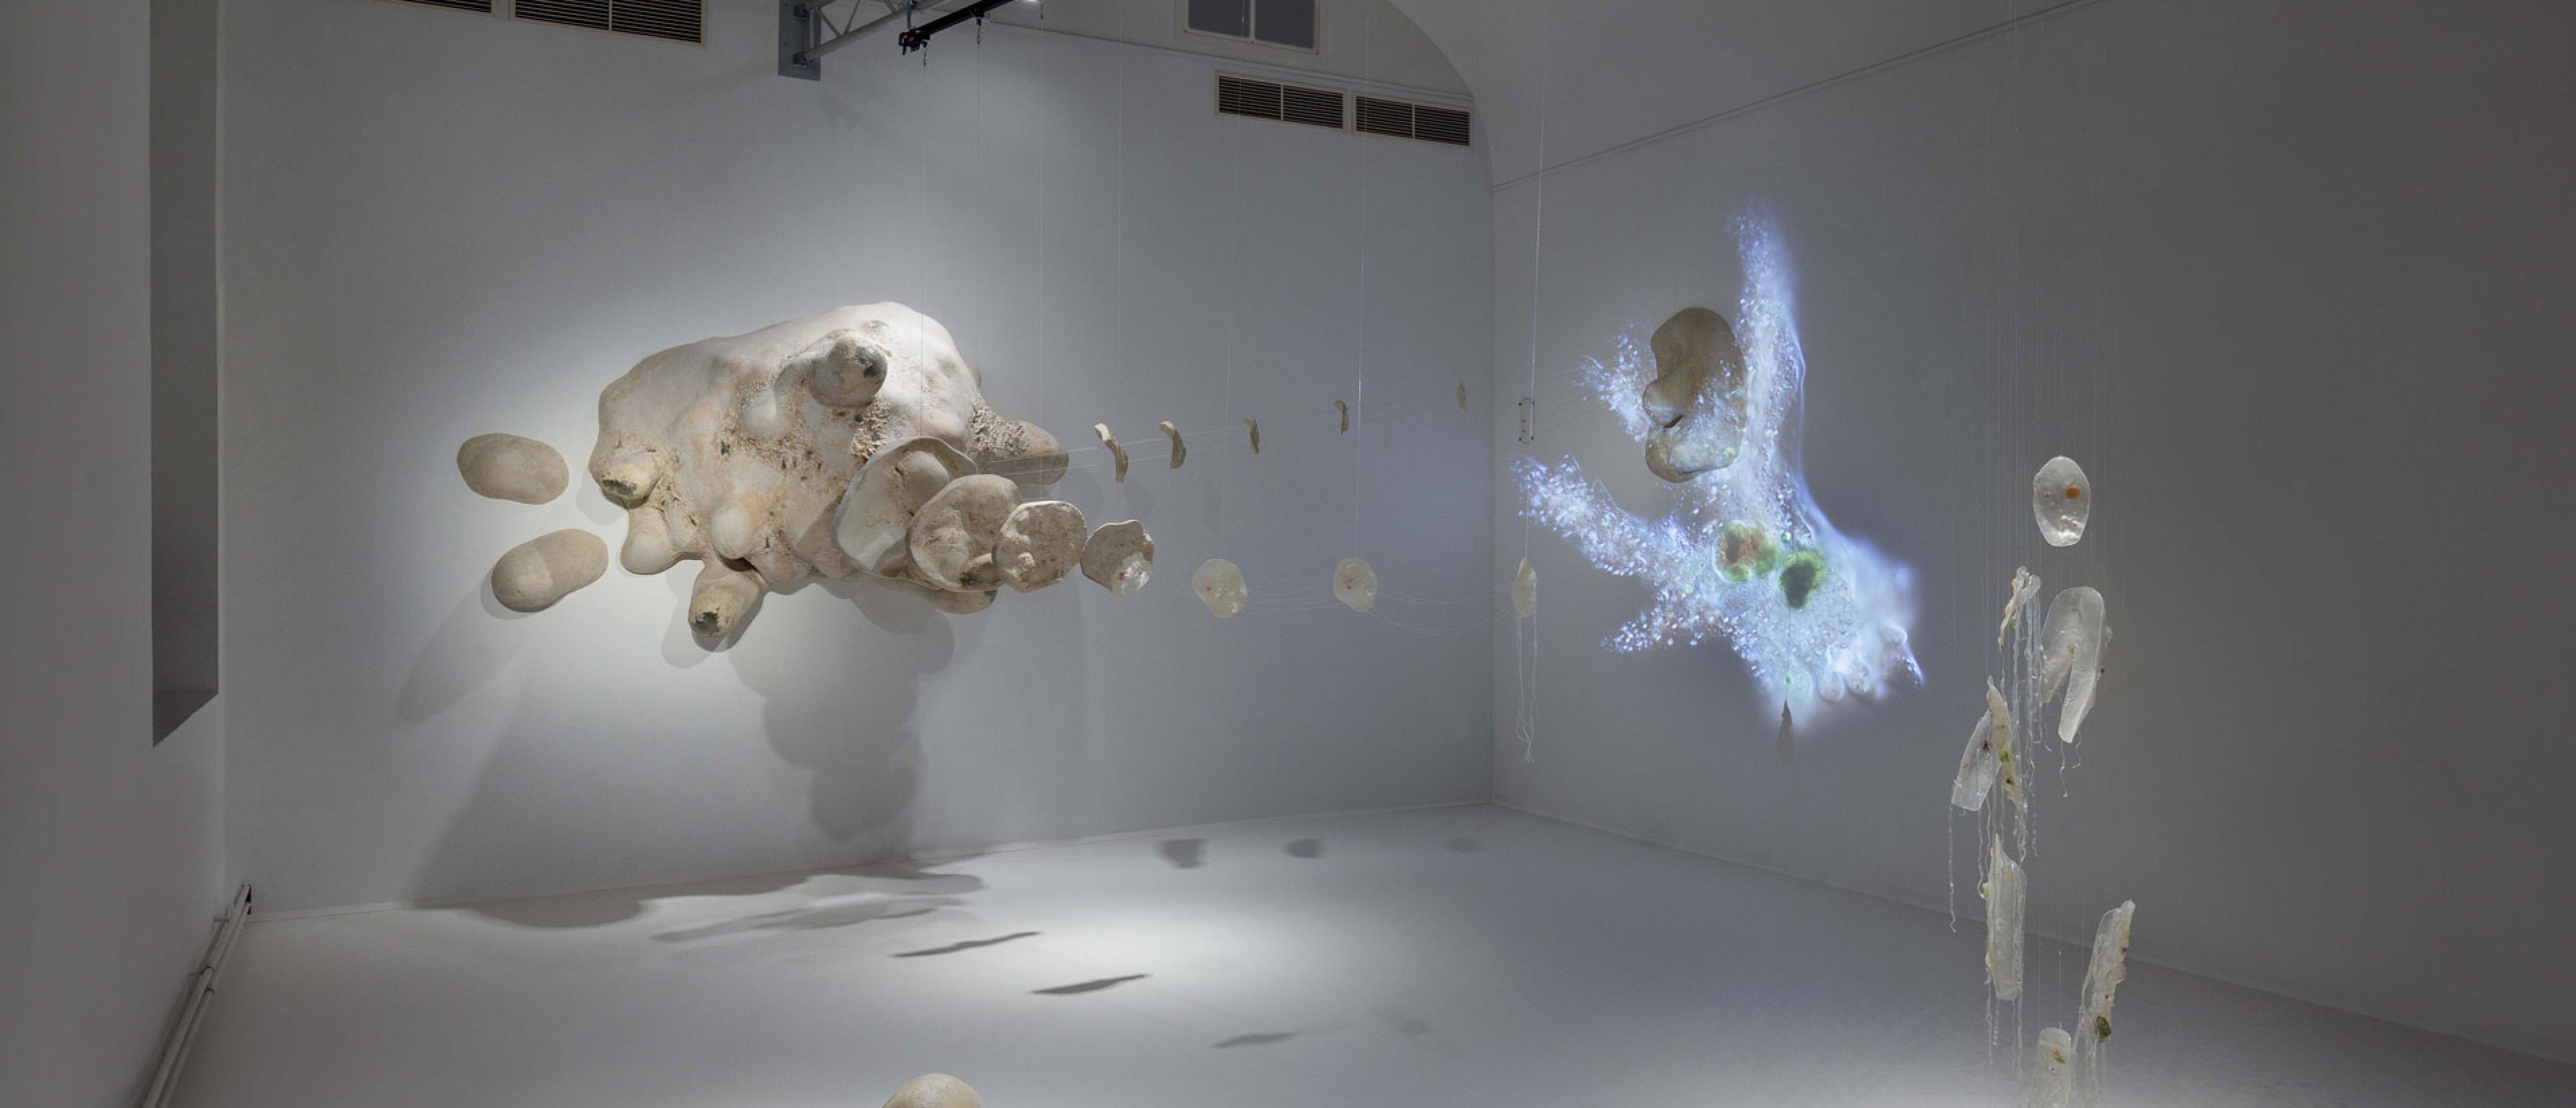 Ausstellungsraum mit weißen Wänden, darin aufgestellt, hängend und an der Wand: 40.000-fachen Vergrößerung einer Amöbe